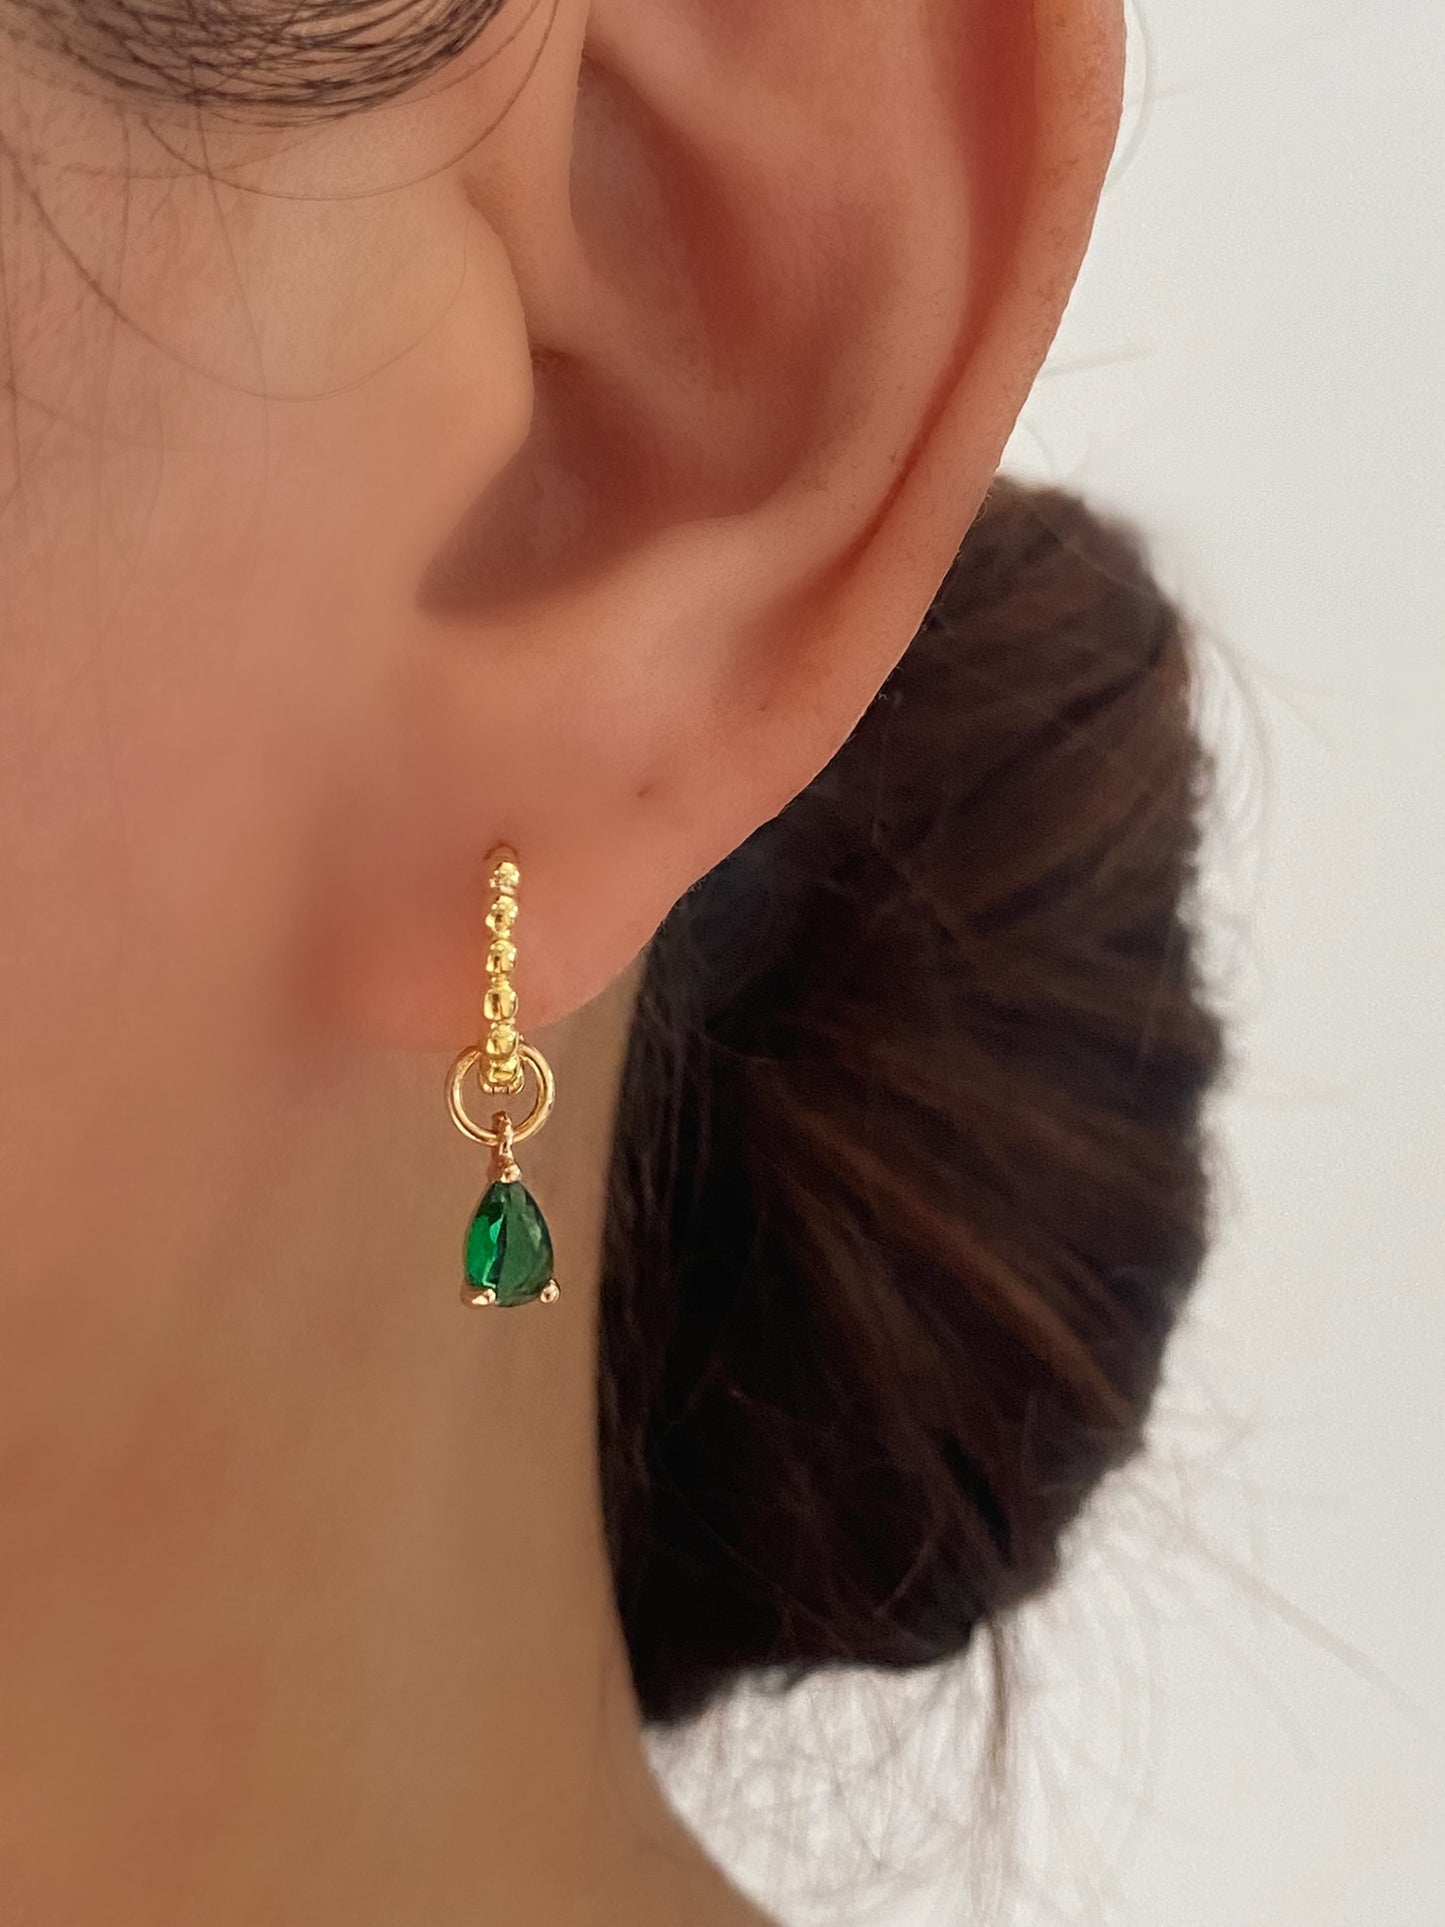 Princess Dainty Hoop Teardrop Dangle Earrings Emerald GREEN